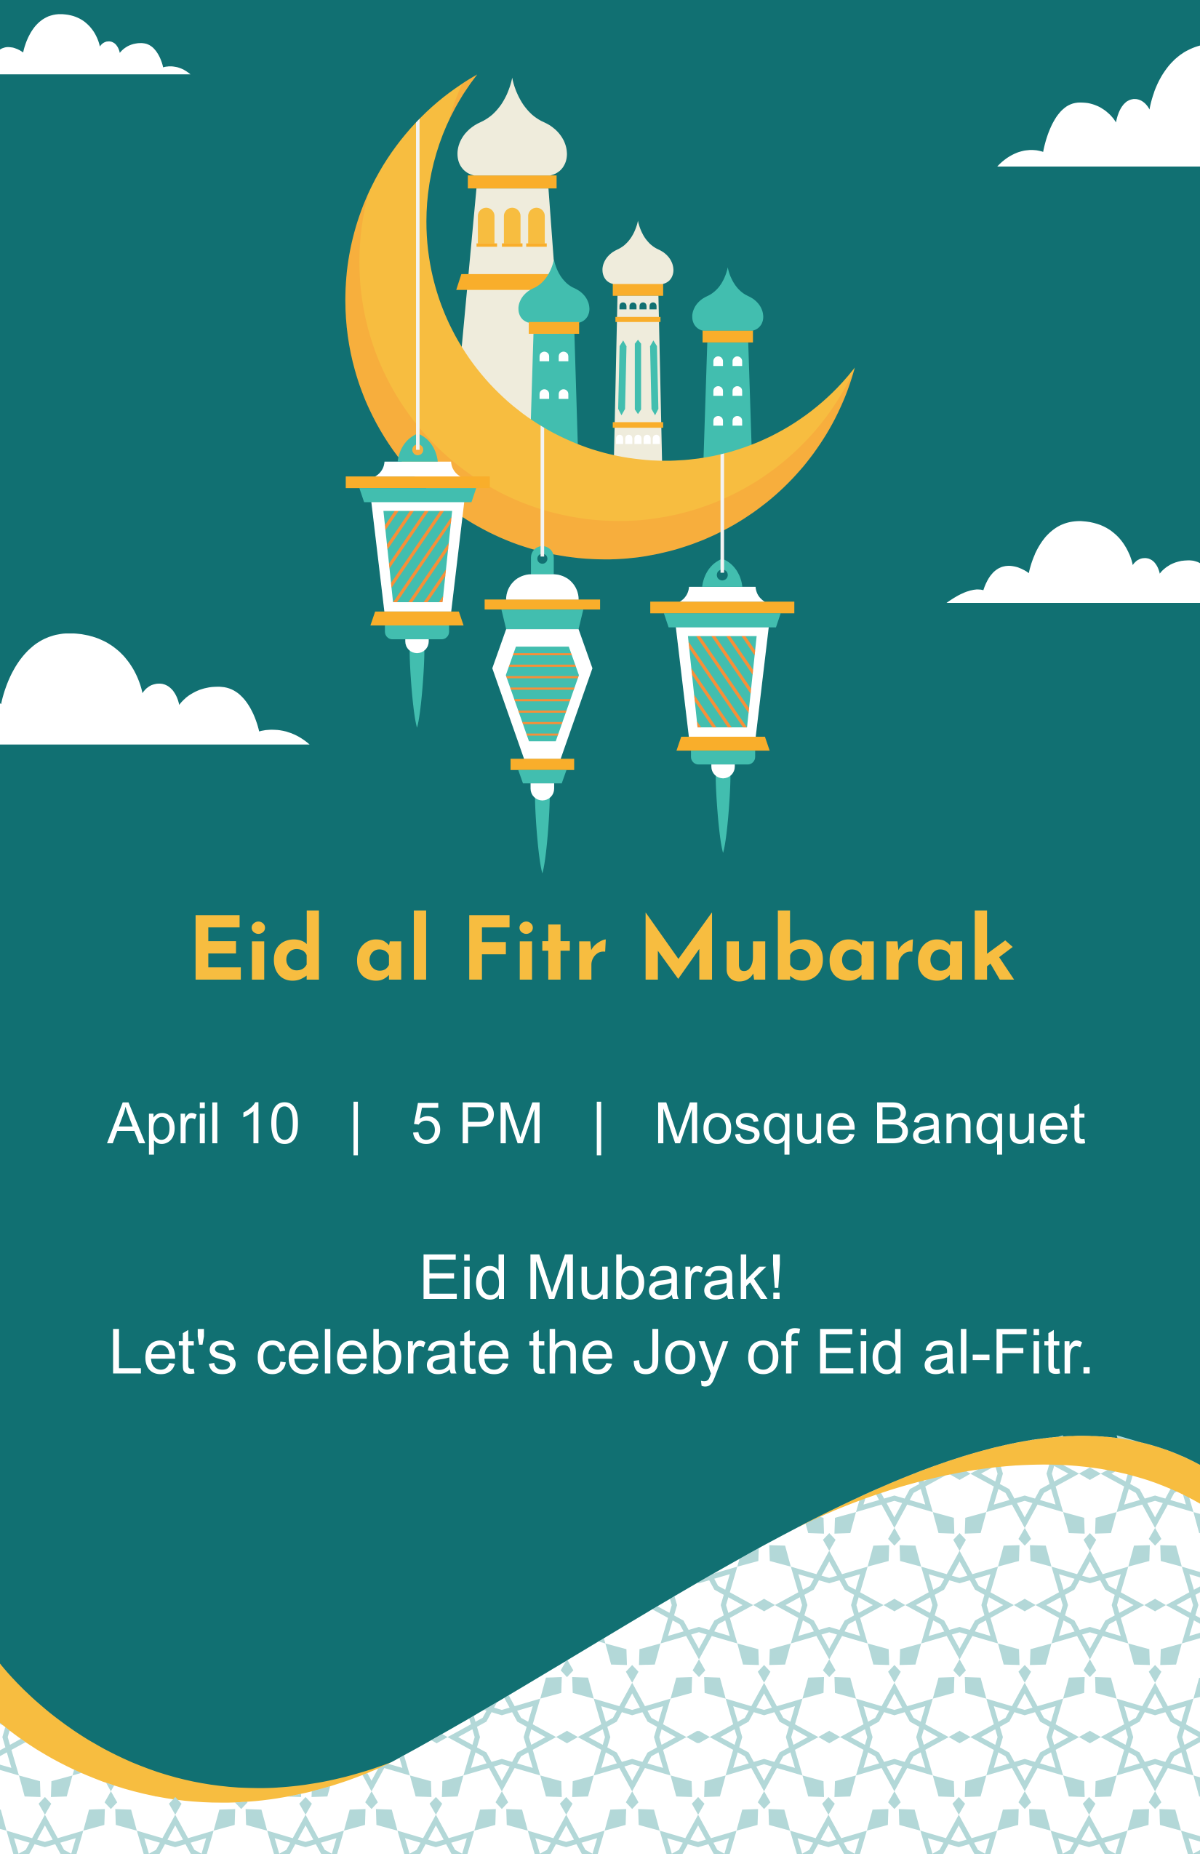 Free Eid al Fitr Mubarak Poster Template